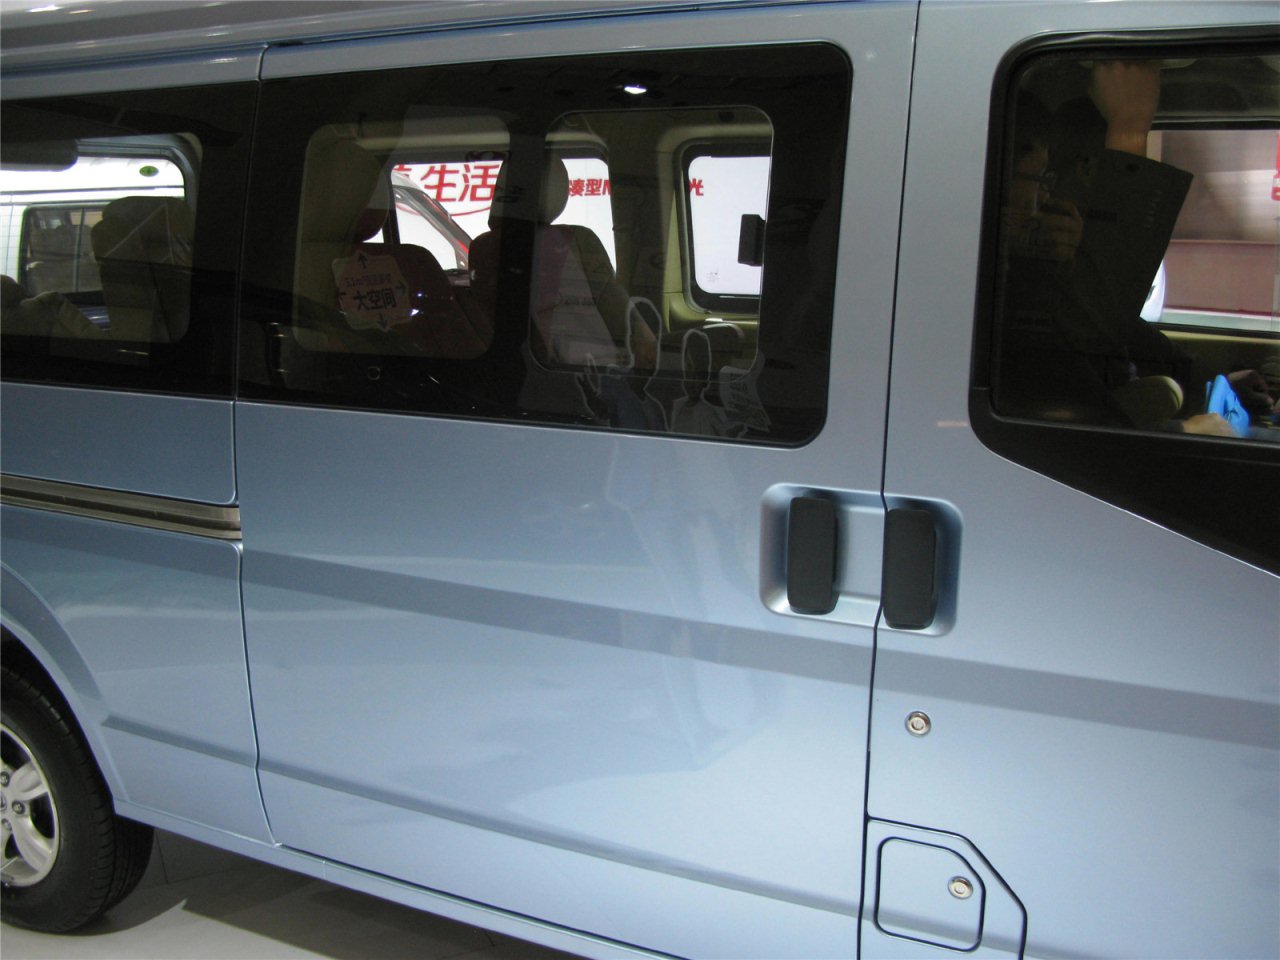 第二届中国国际商用车展览车型：东风小康C37